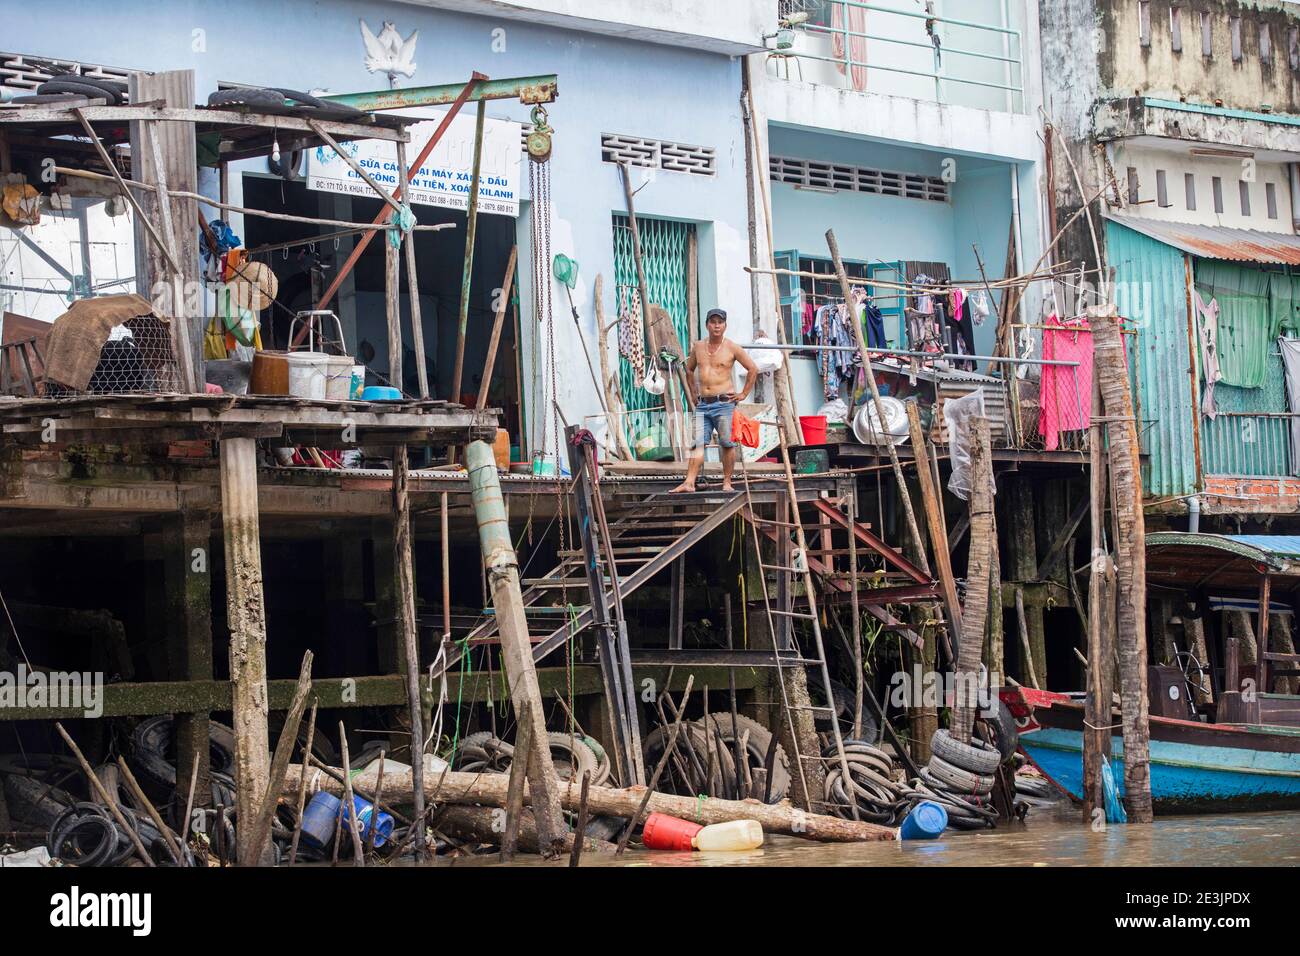 Stilt houses in the Mekong Delta near Can Tho, Vietnam Stock Photo